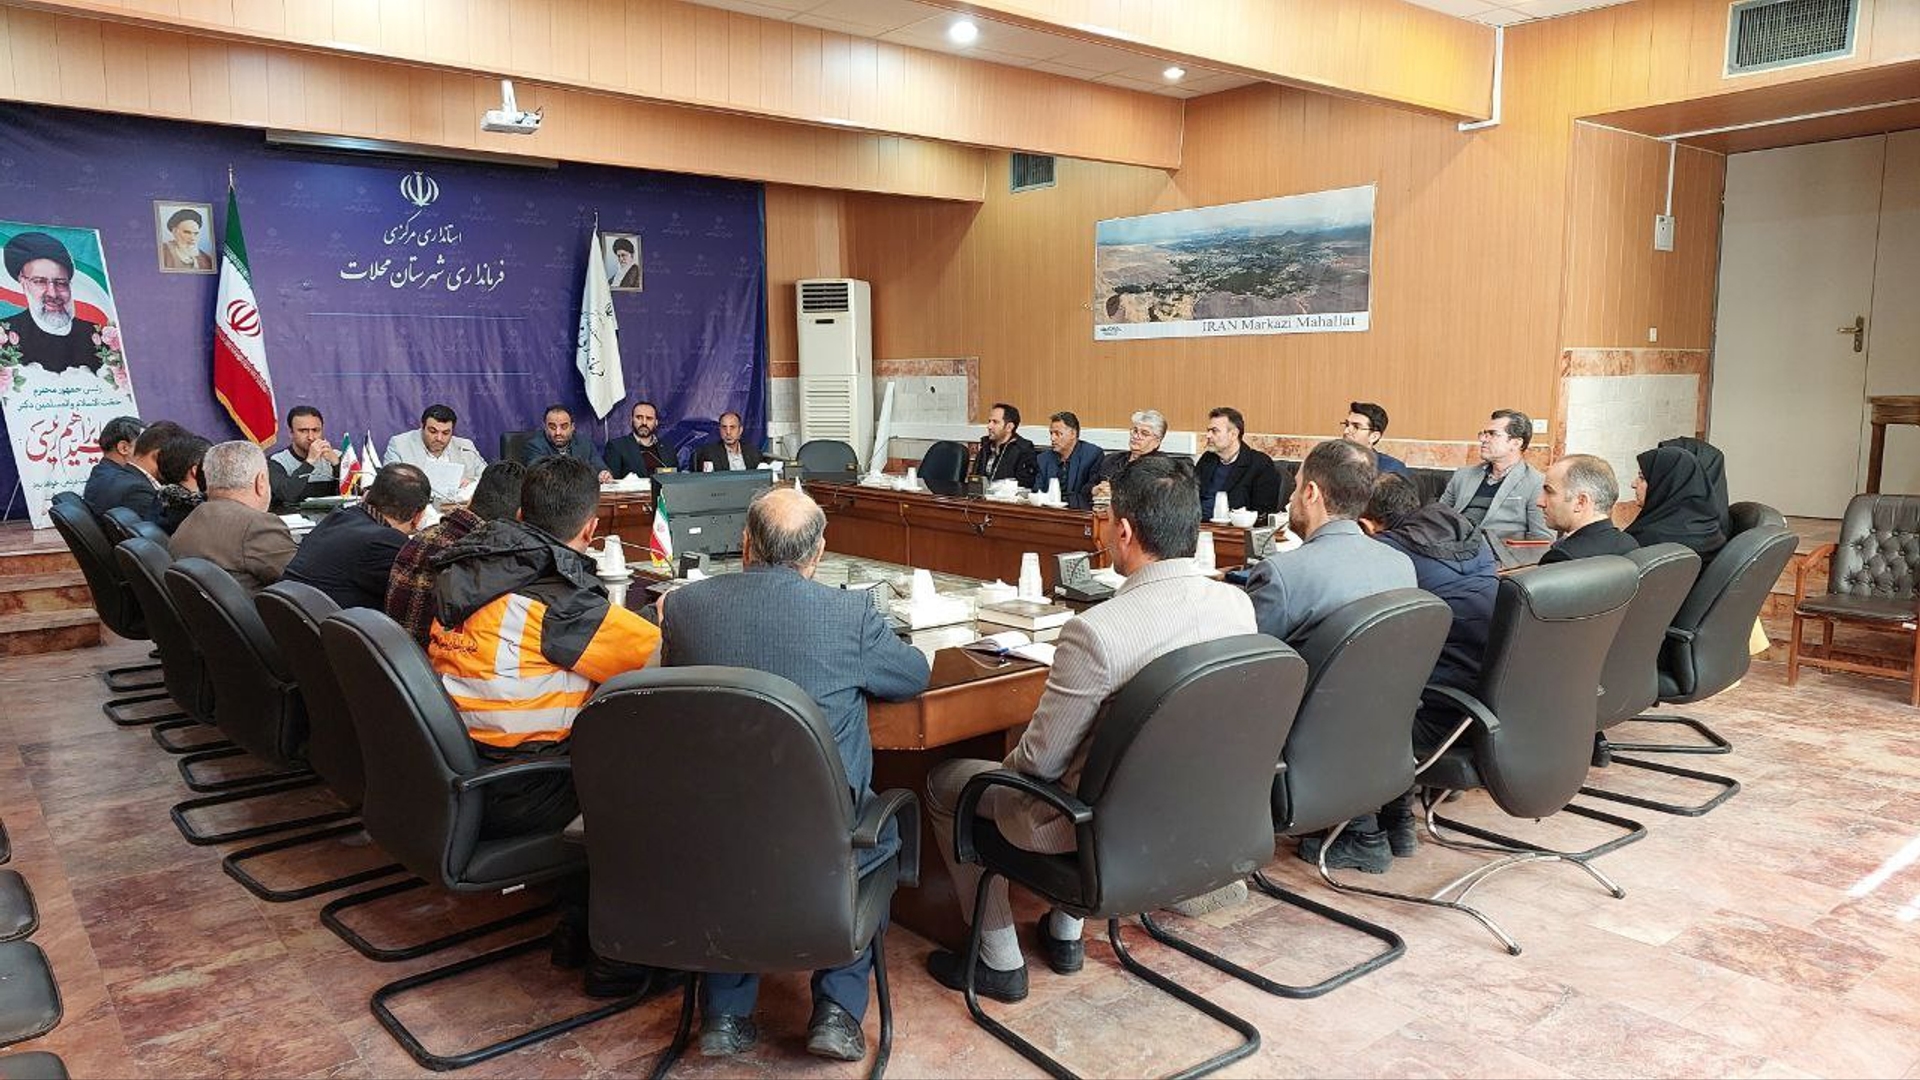 جلسه مشترک ستاد مدیریت بحران و شورای پدافند غیر عامل شهرستان محلات تشکیل شد.